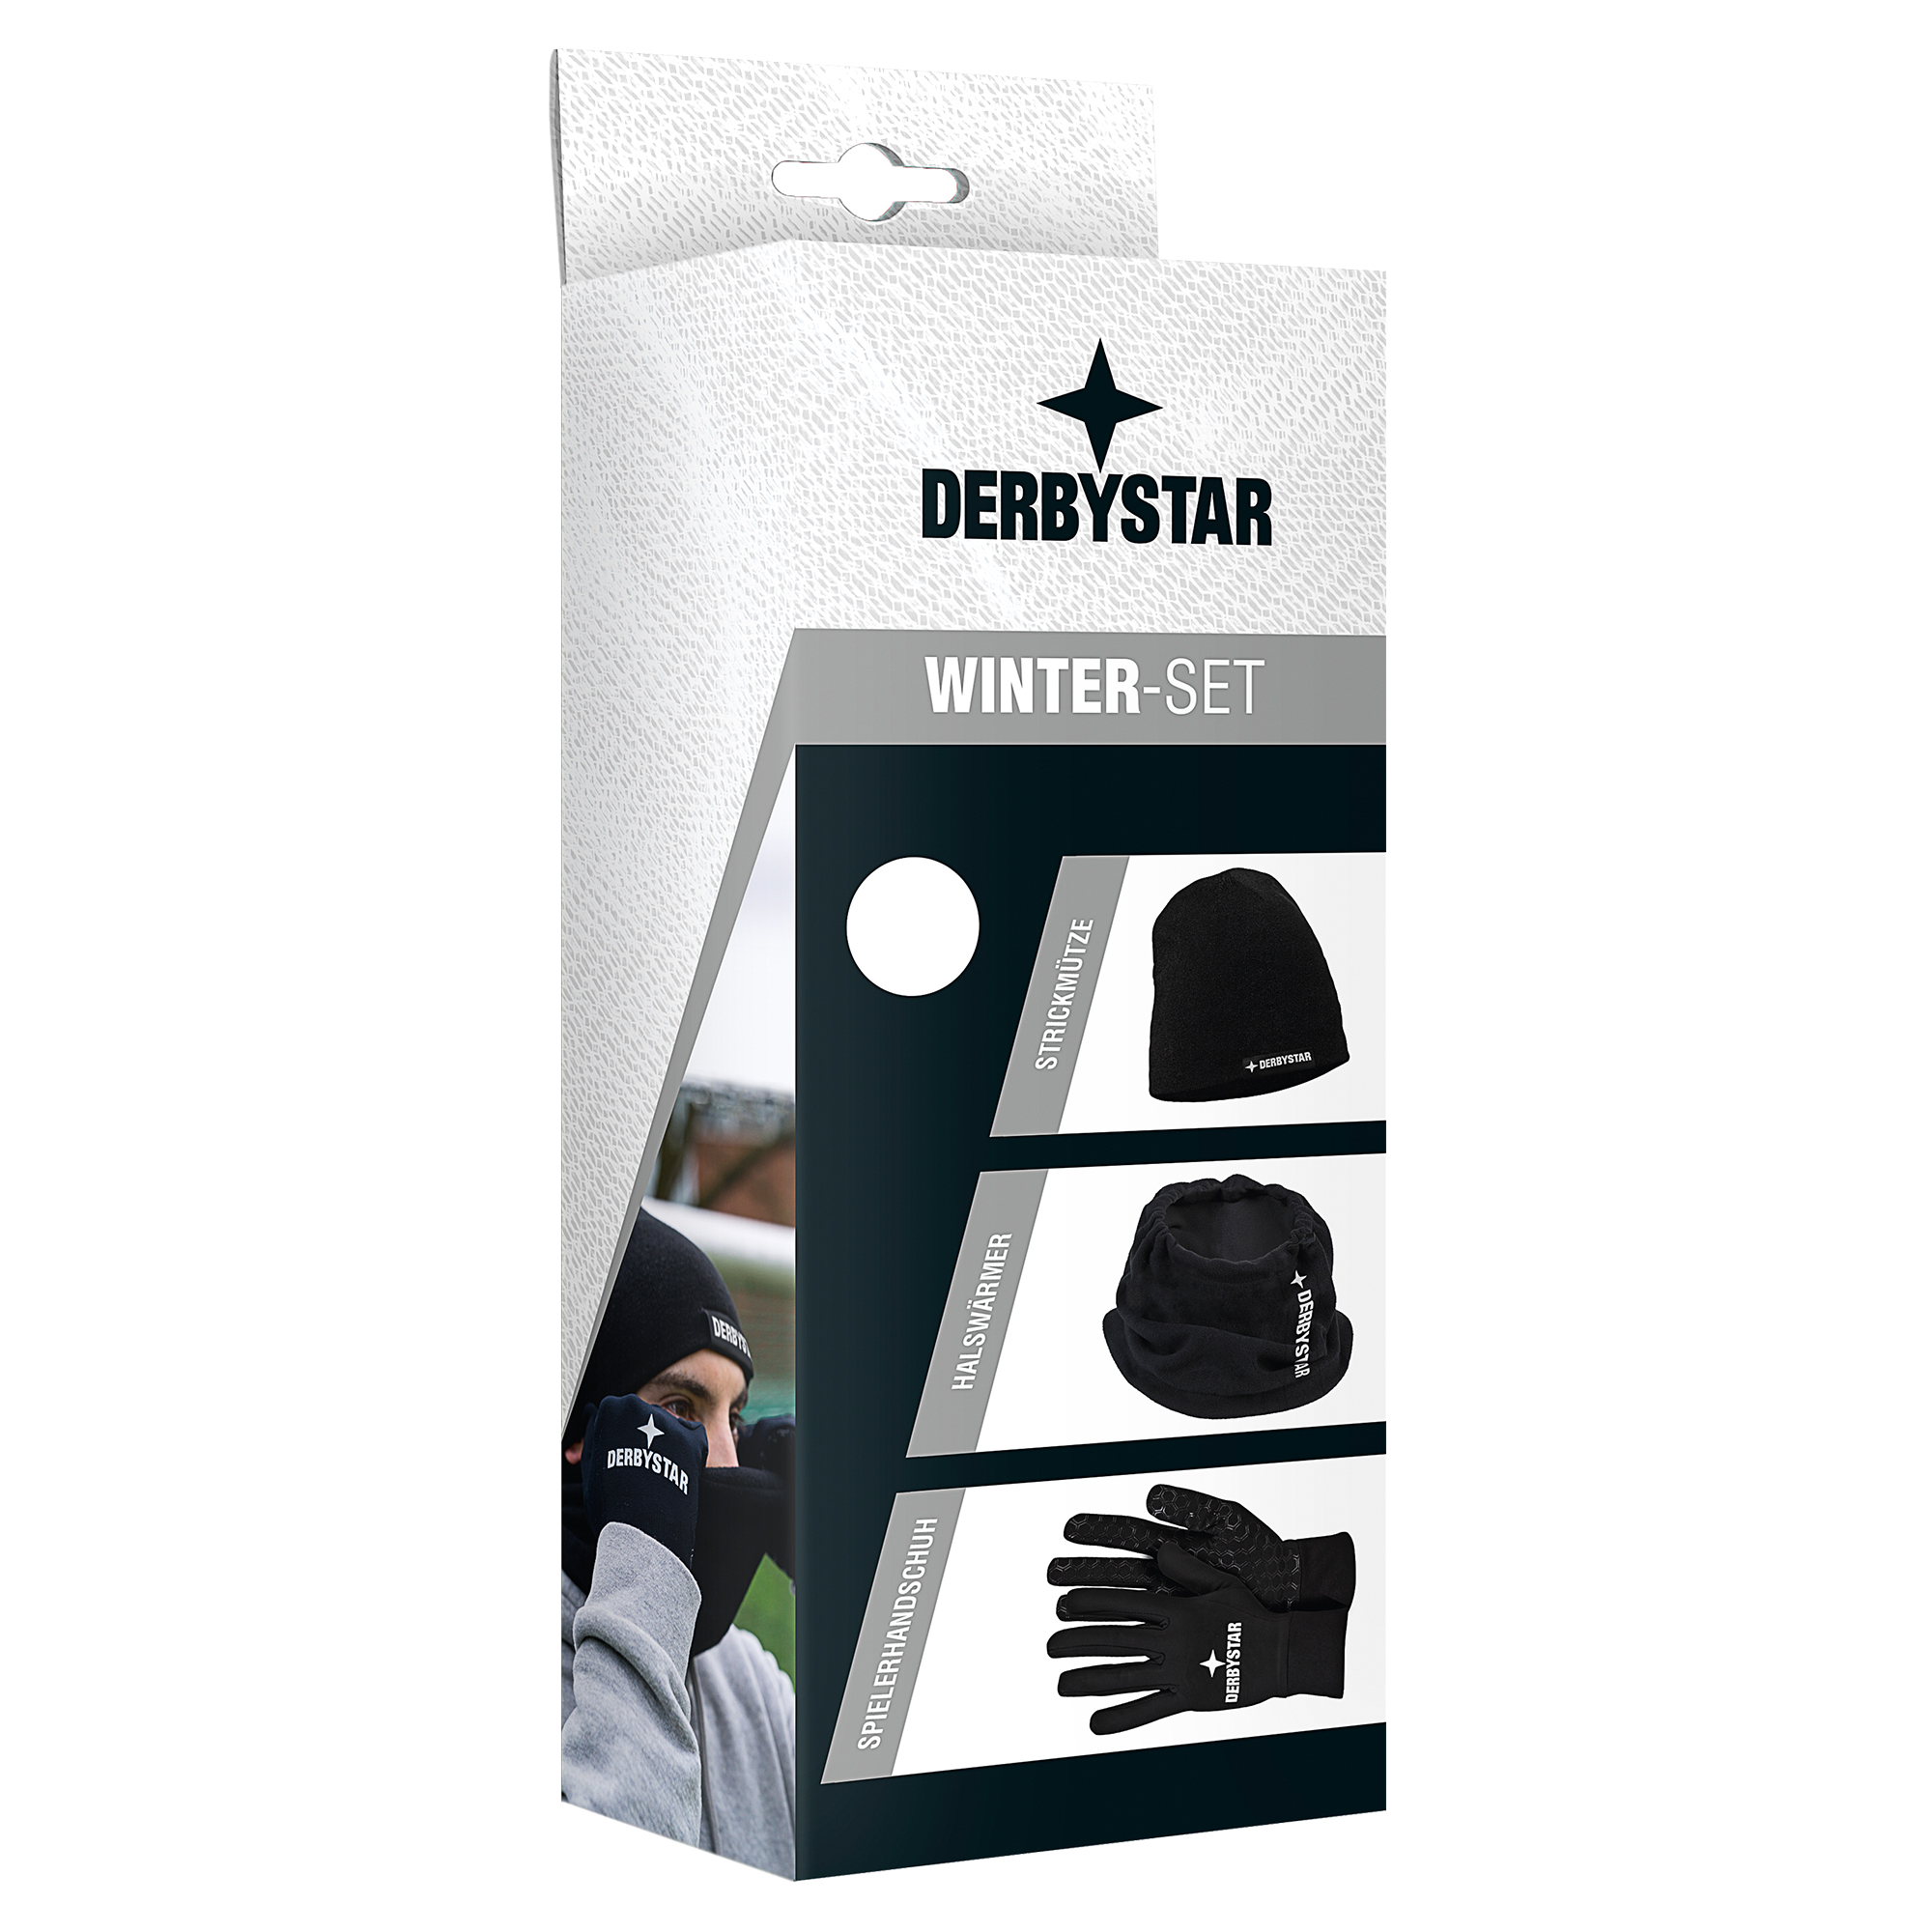 Derbystar Winter-Set